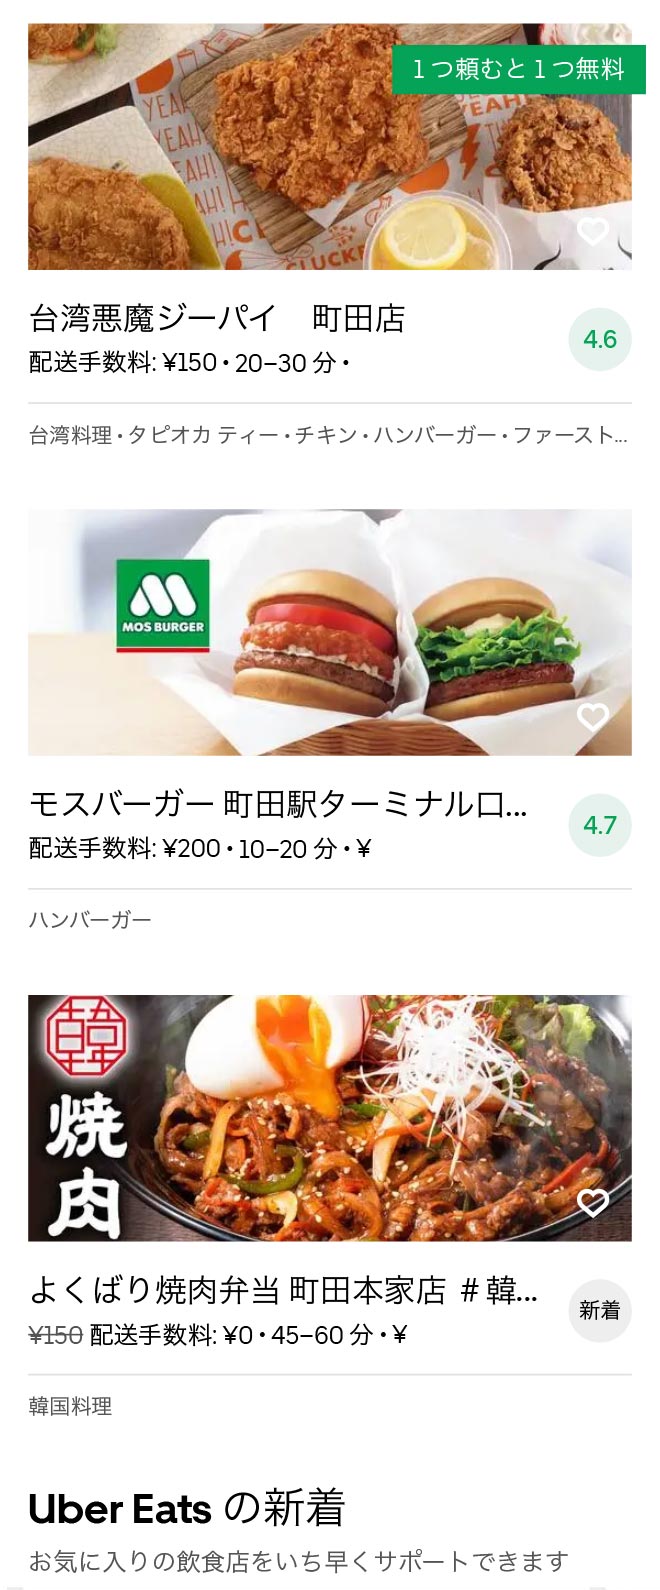 Machida menu 2010 04